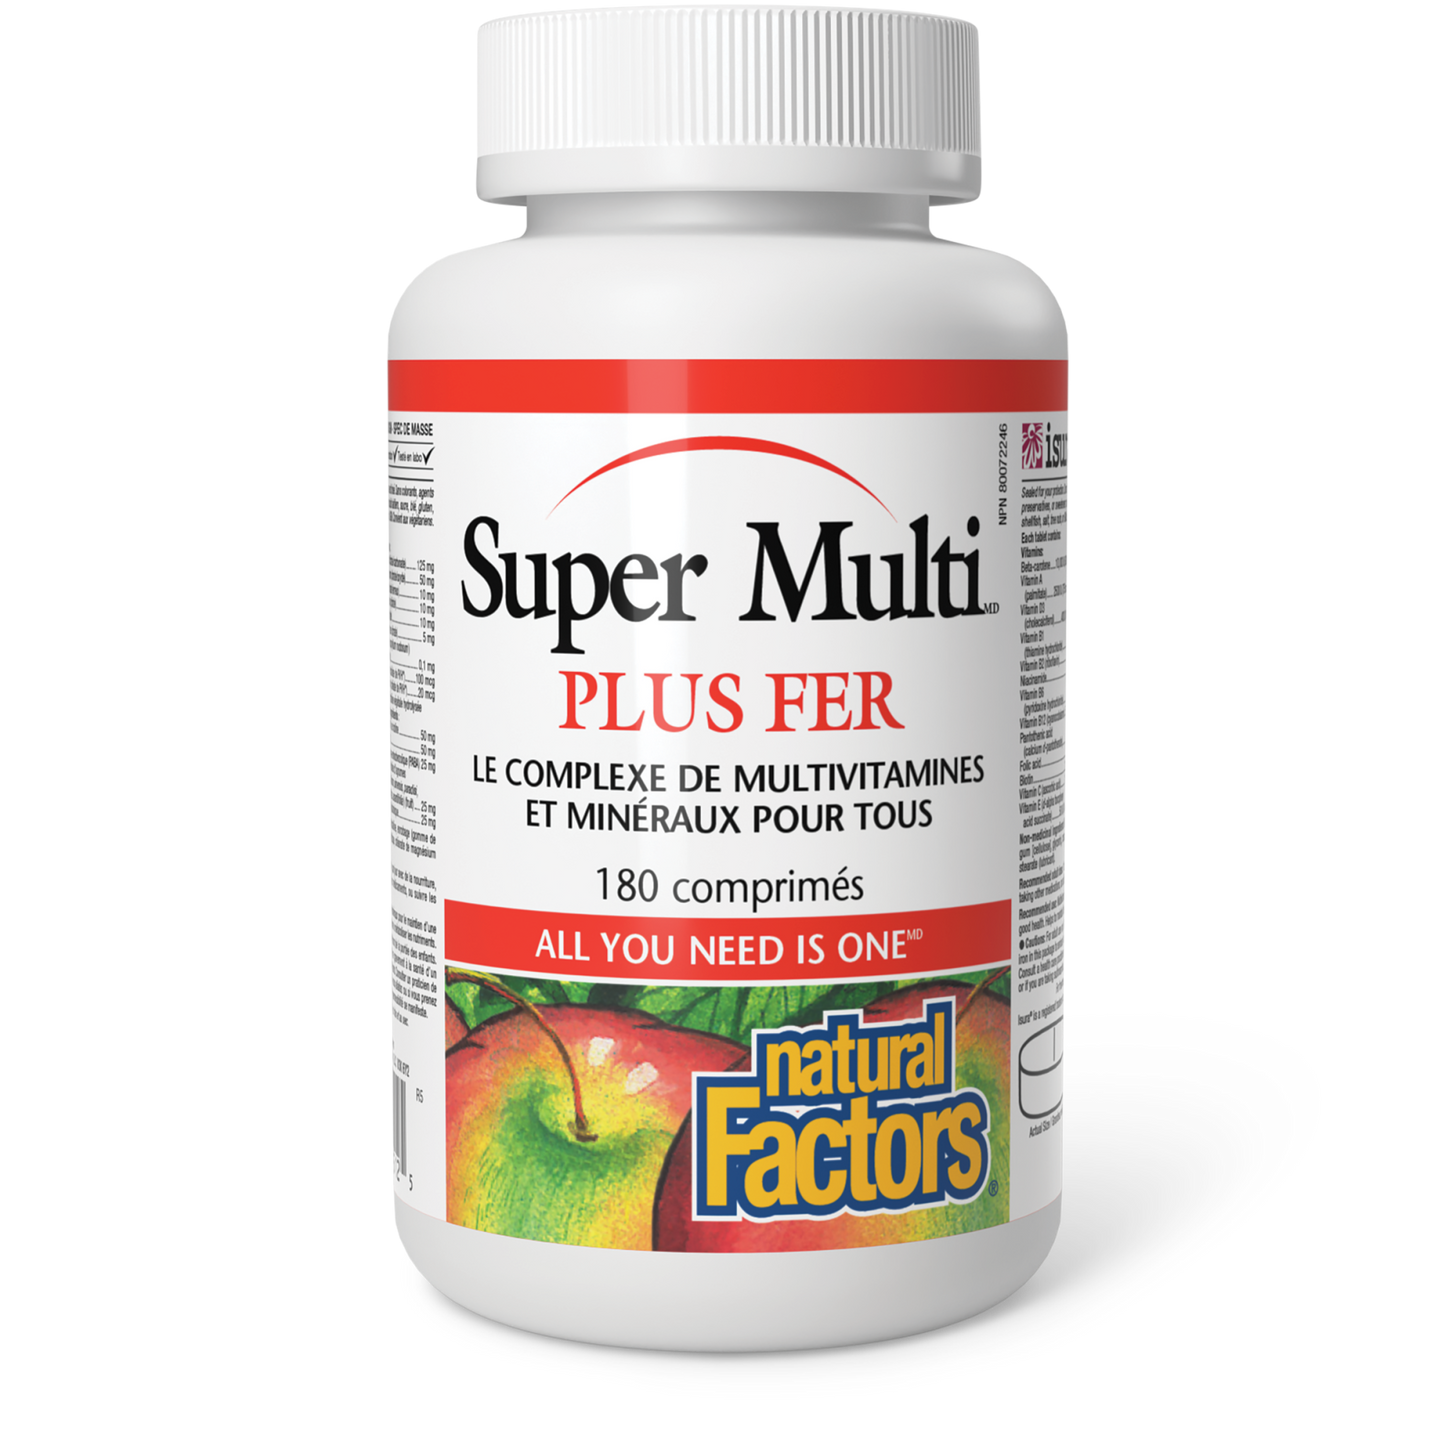 Super Multi plus fer, Natural Factors|v|image|1512